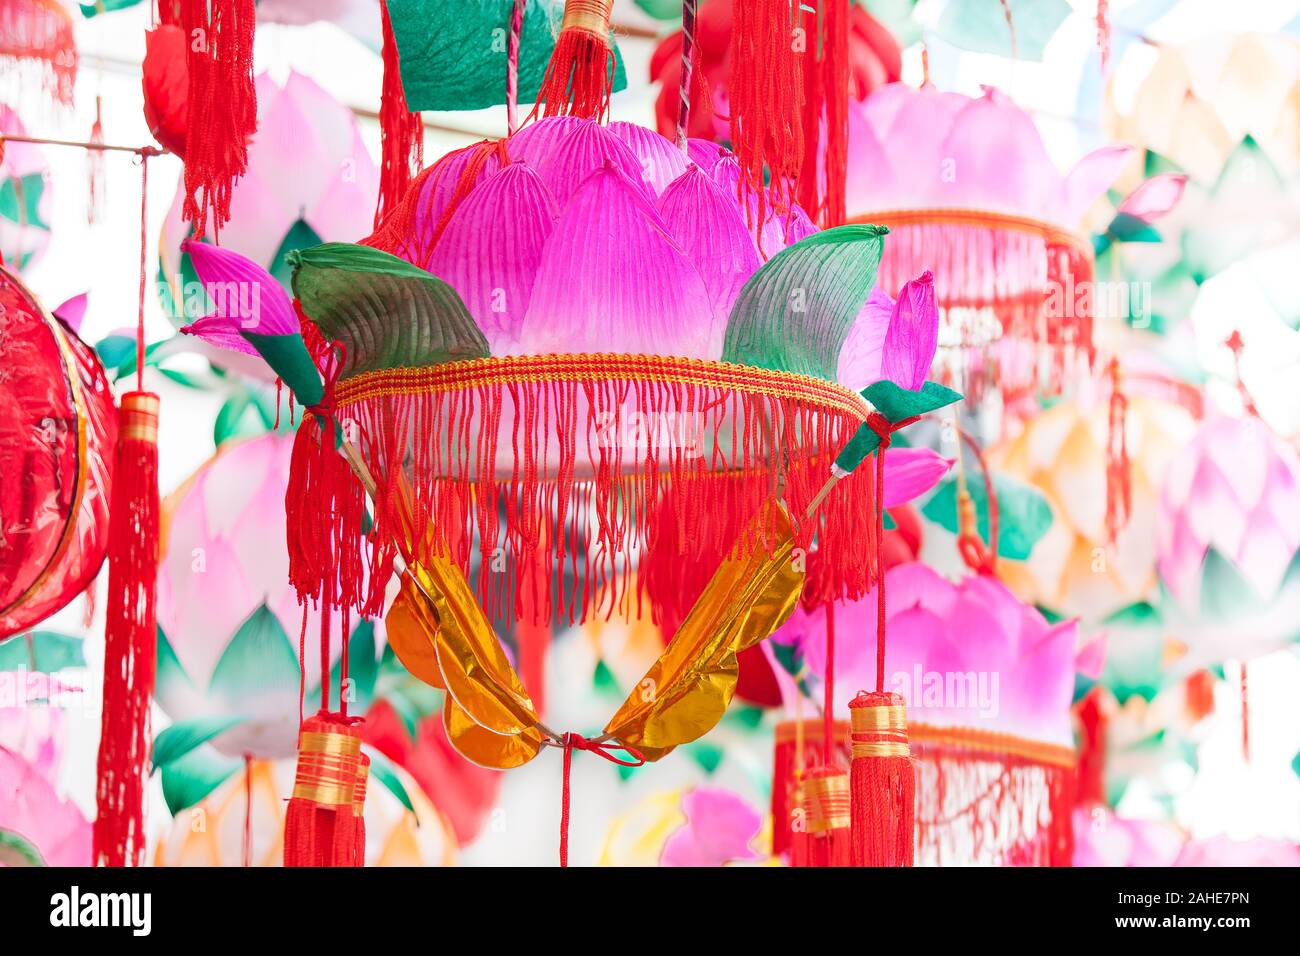 Groupe de musique traditionnelle chinoise colorées en forme de lanternes Lotus la pendaison pour le nouvel an chinois et fête des lanternes chinoises dans un parc, Shanghai, Chine Banque D'Images